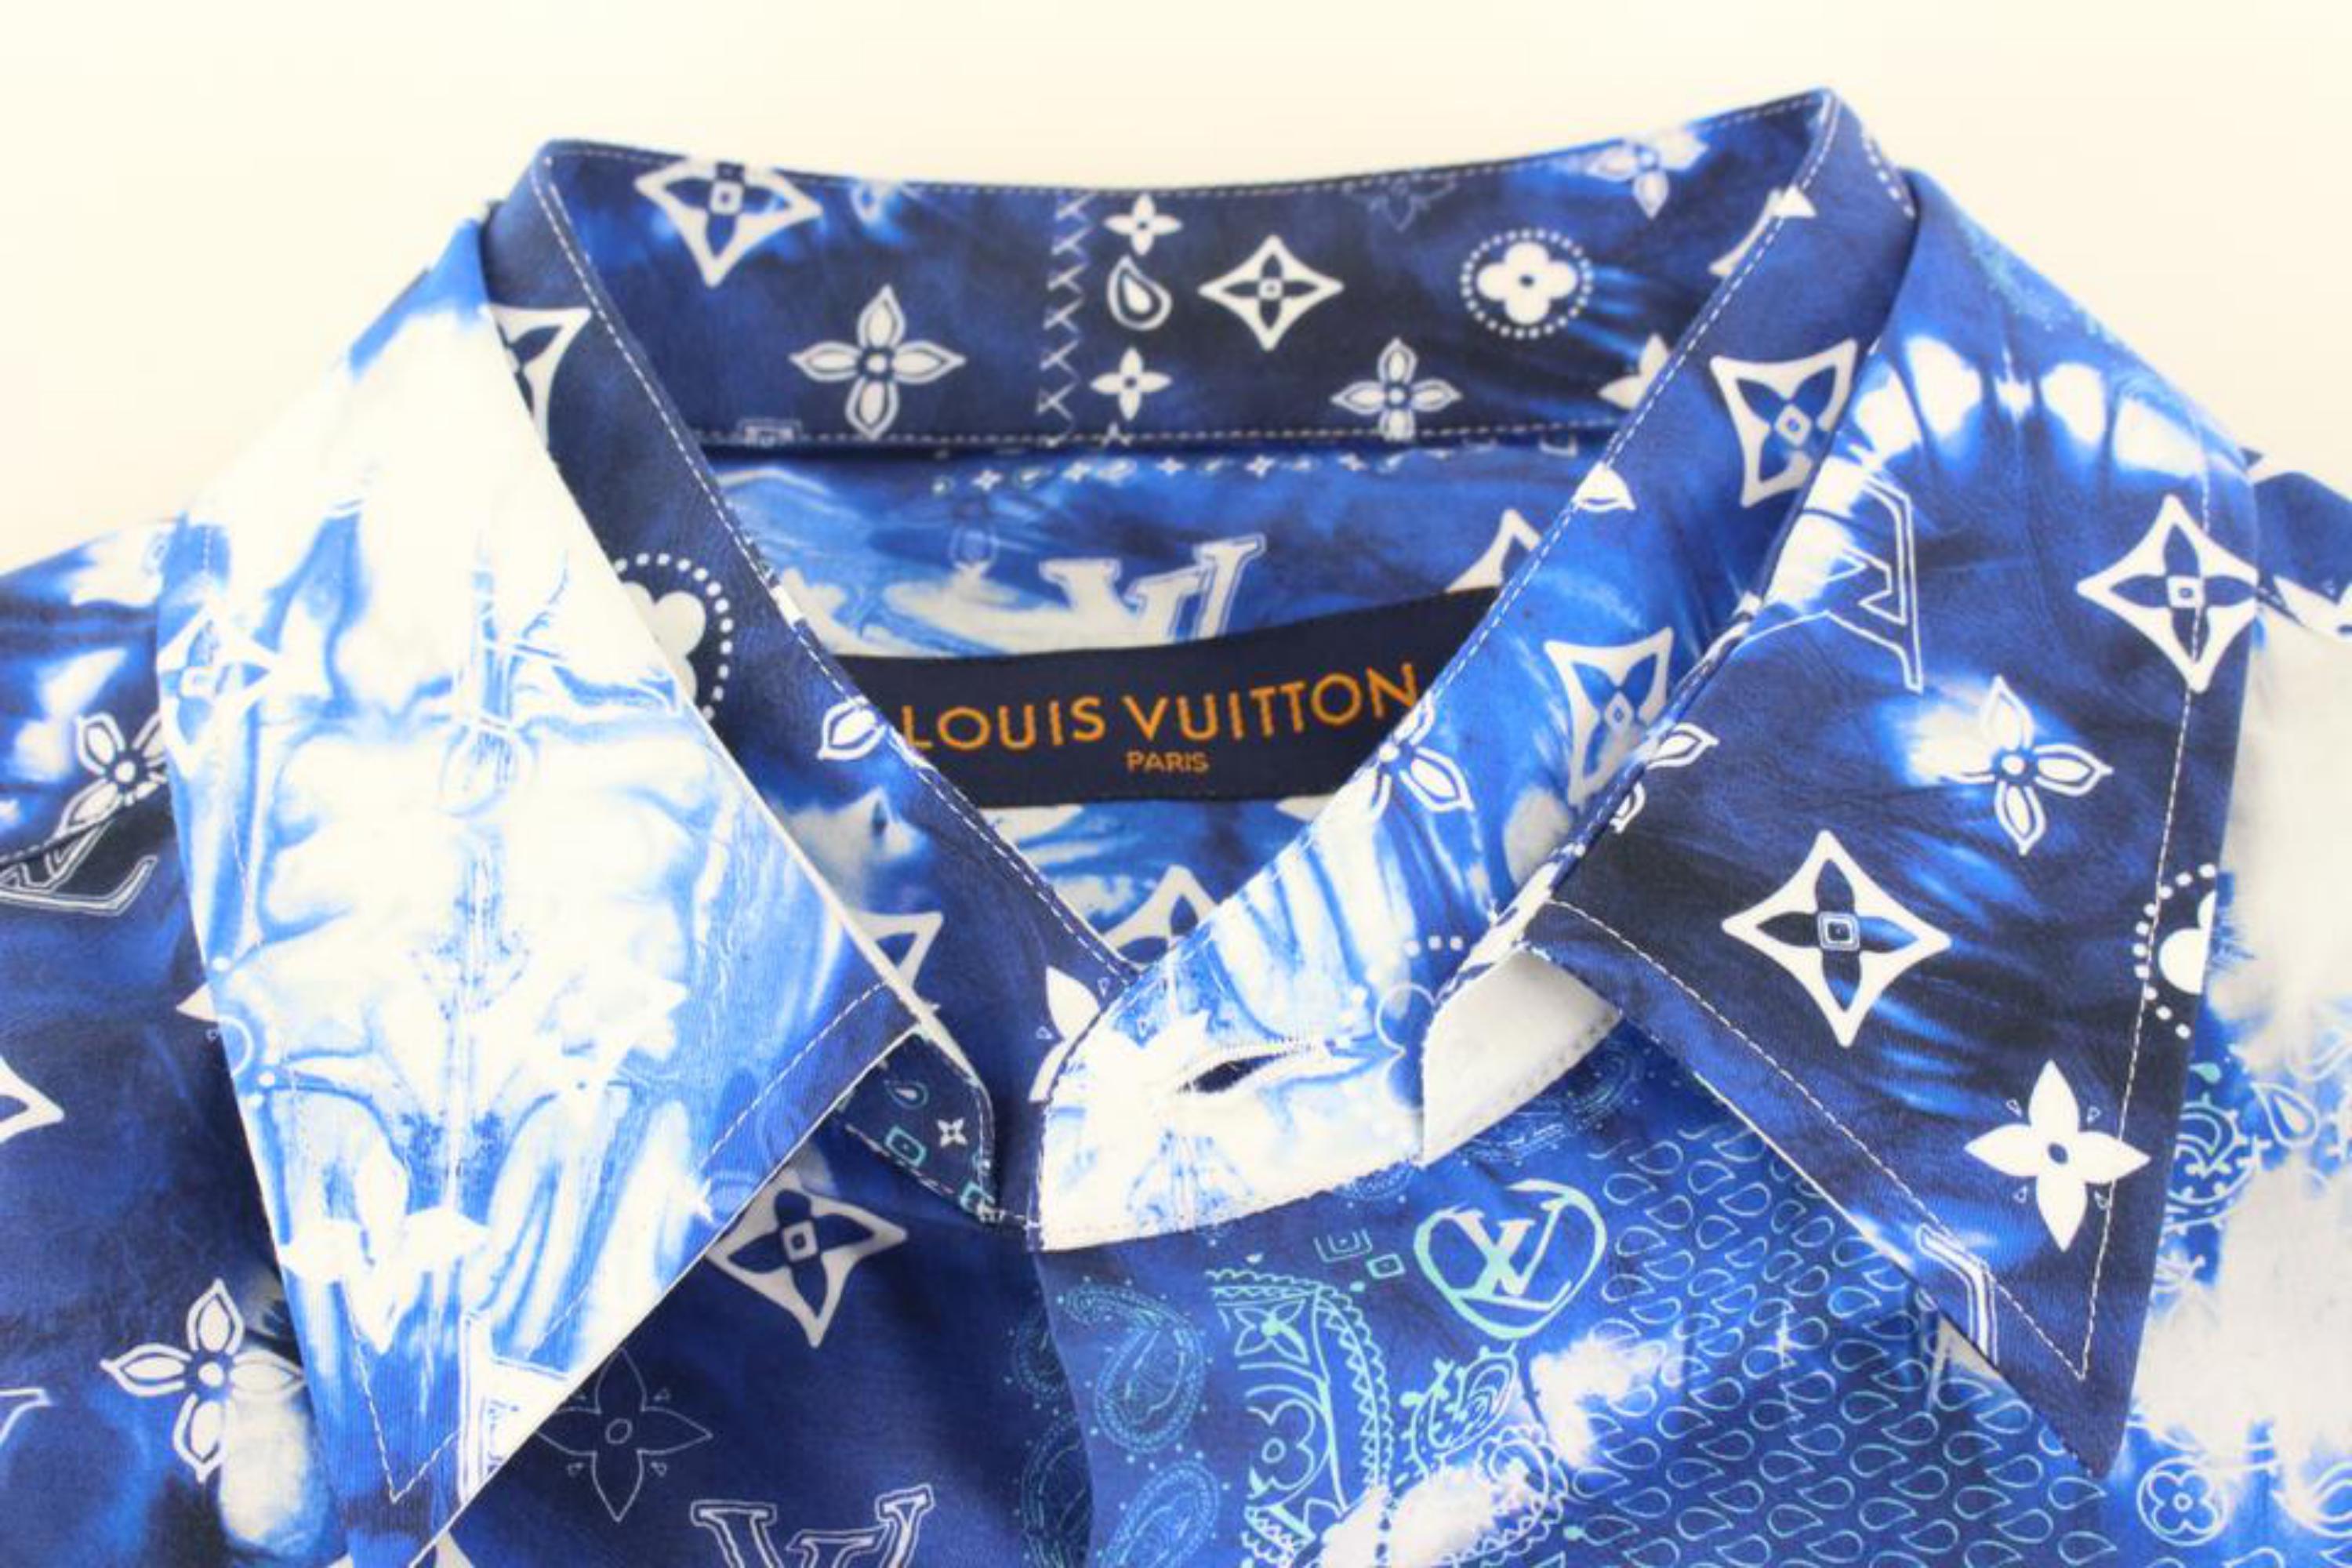 Bleu Louis Vuitton Men's XL Monogram Bandana Blue Button Down Short Sleeve Shirt 86lk